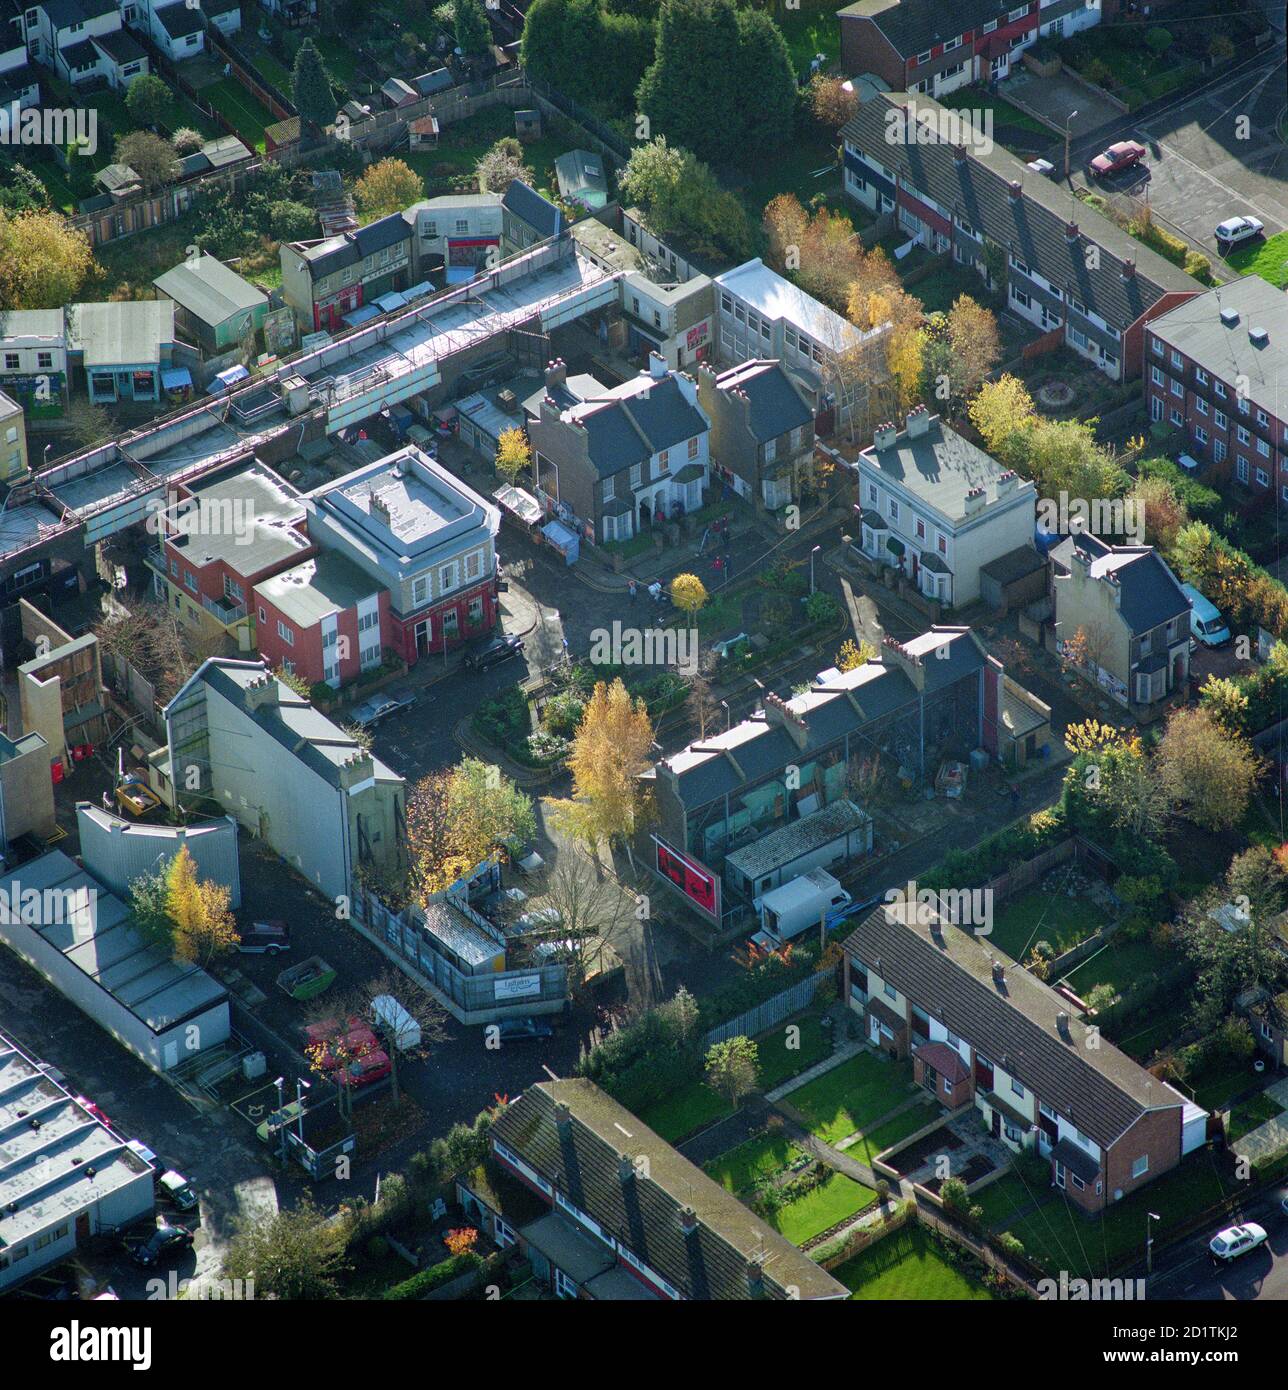 ALBERT SQUARE, Walford, Londra. Vista aerea del set del film per Albert Square, ambientazione di Walford per la famosa soap opera televisiva della BBC, Eastenders. Collezione Aerofilms. Foto Stock